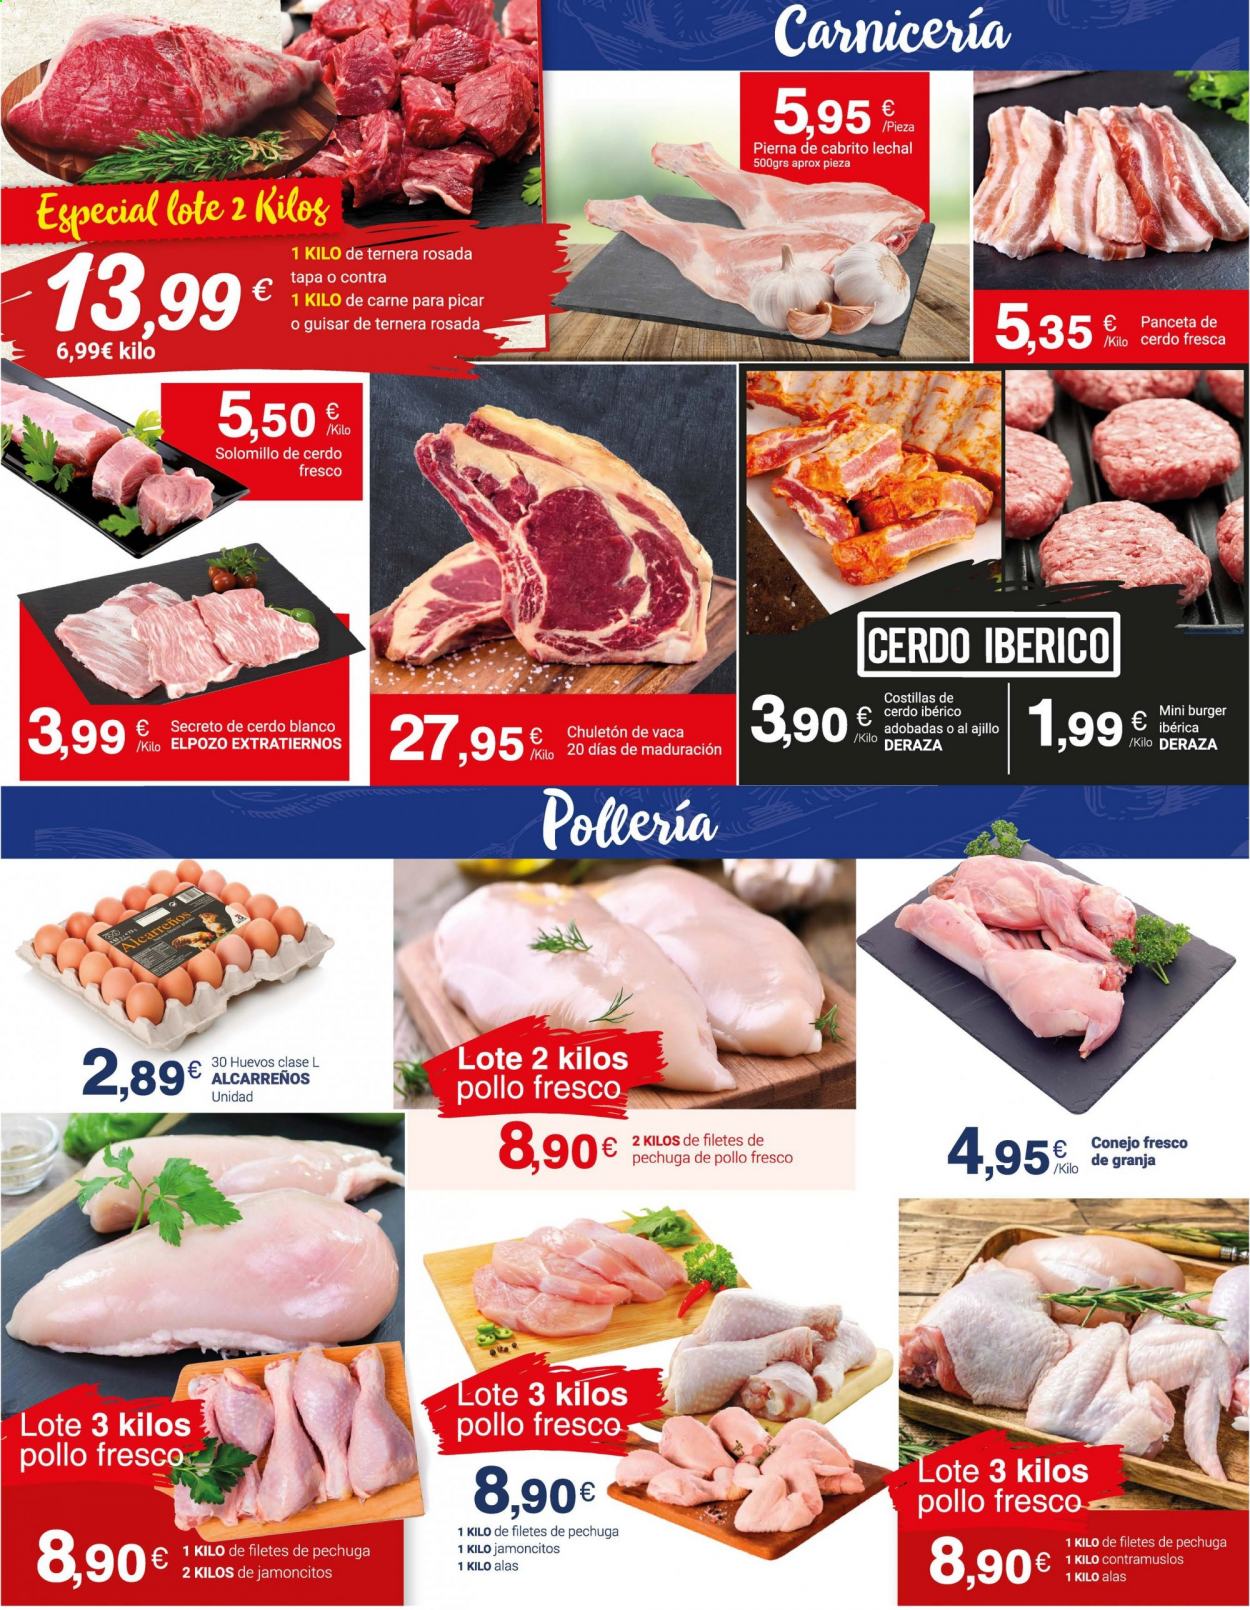 thumbnail - Folleto actual Supermercados Plaza - 30/04/21 - 16/05/21 - Ventas - solomillo, cerdo ibérico, costilla, secreto de cerdo, solomillo de cerdo, contramuslo, pollo, chuletón, carne de ternera, hamburguesa, conejo, panceta, huevo. Página 10.